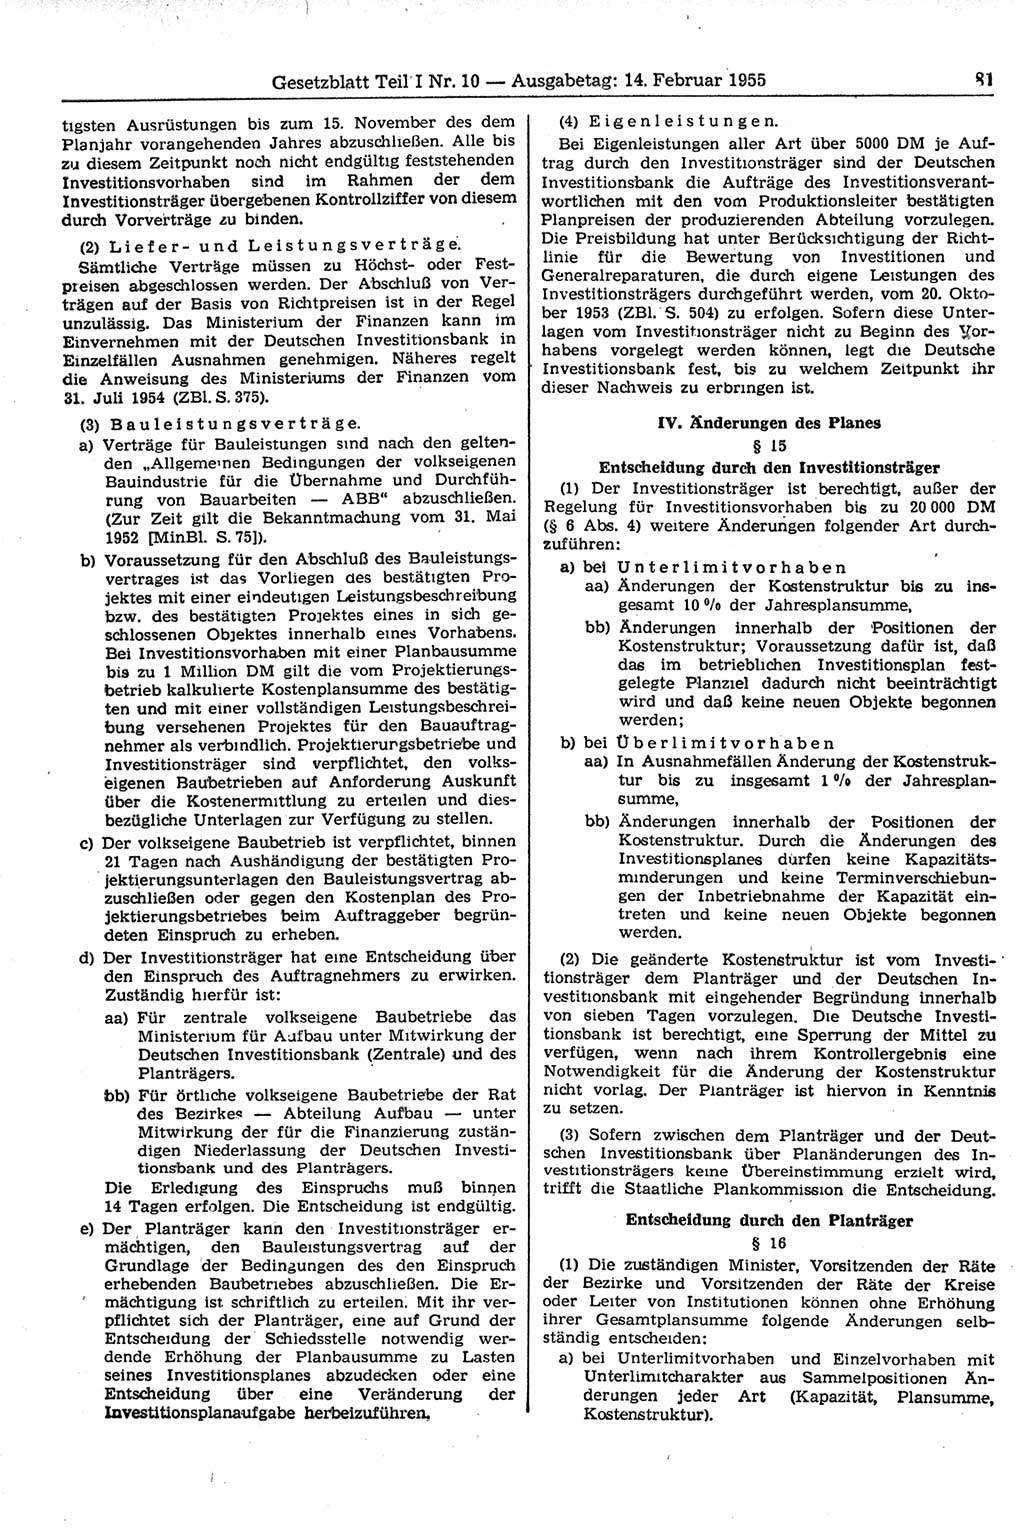 Gesetzblatt (GBl.) der Deutschen Demokratischen Republik (DDR) Teil Ⅰ 1955, Seite 81 (GBl. DDR Ⅰ 1955, S. 81)